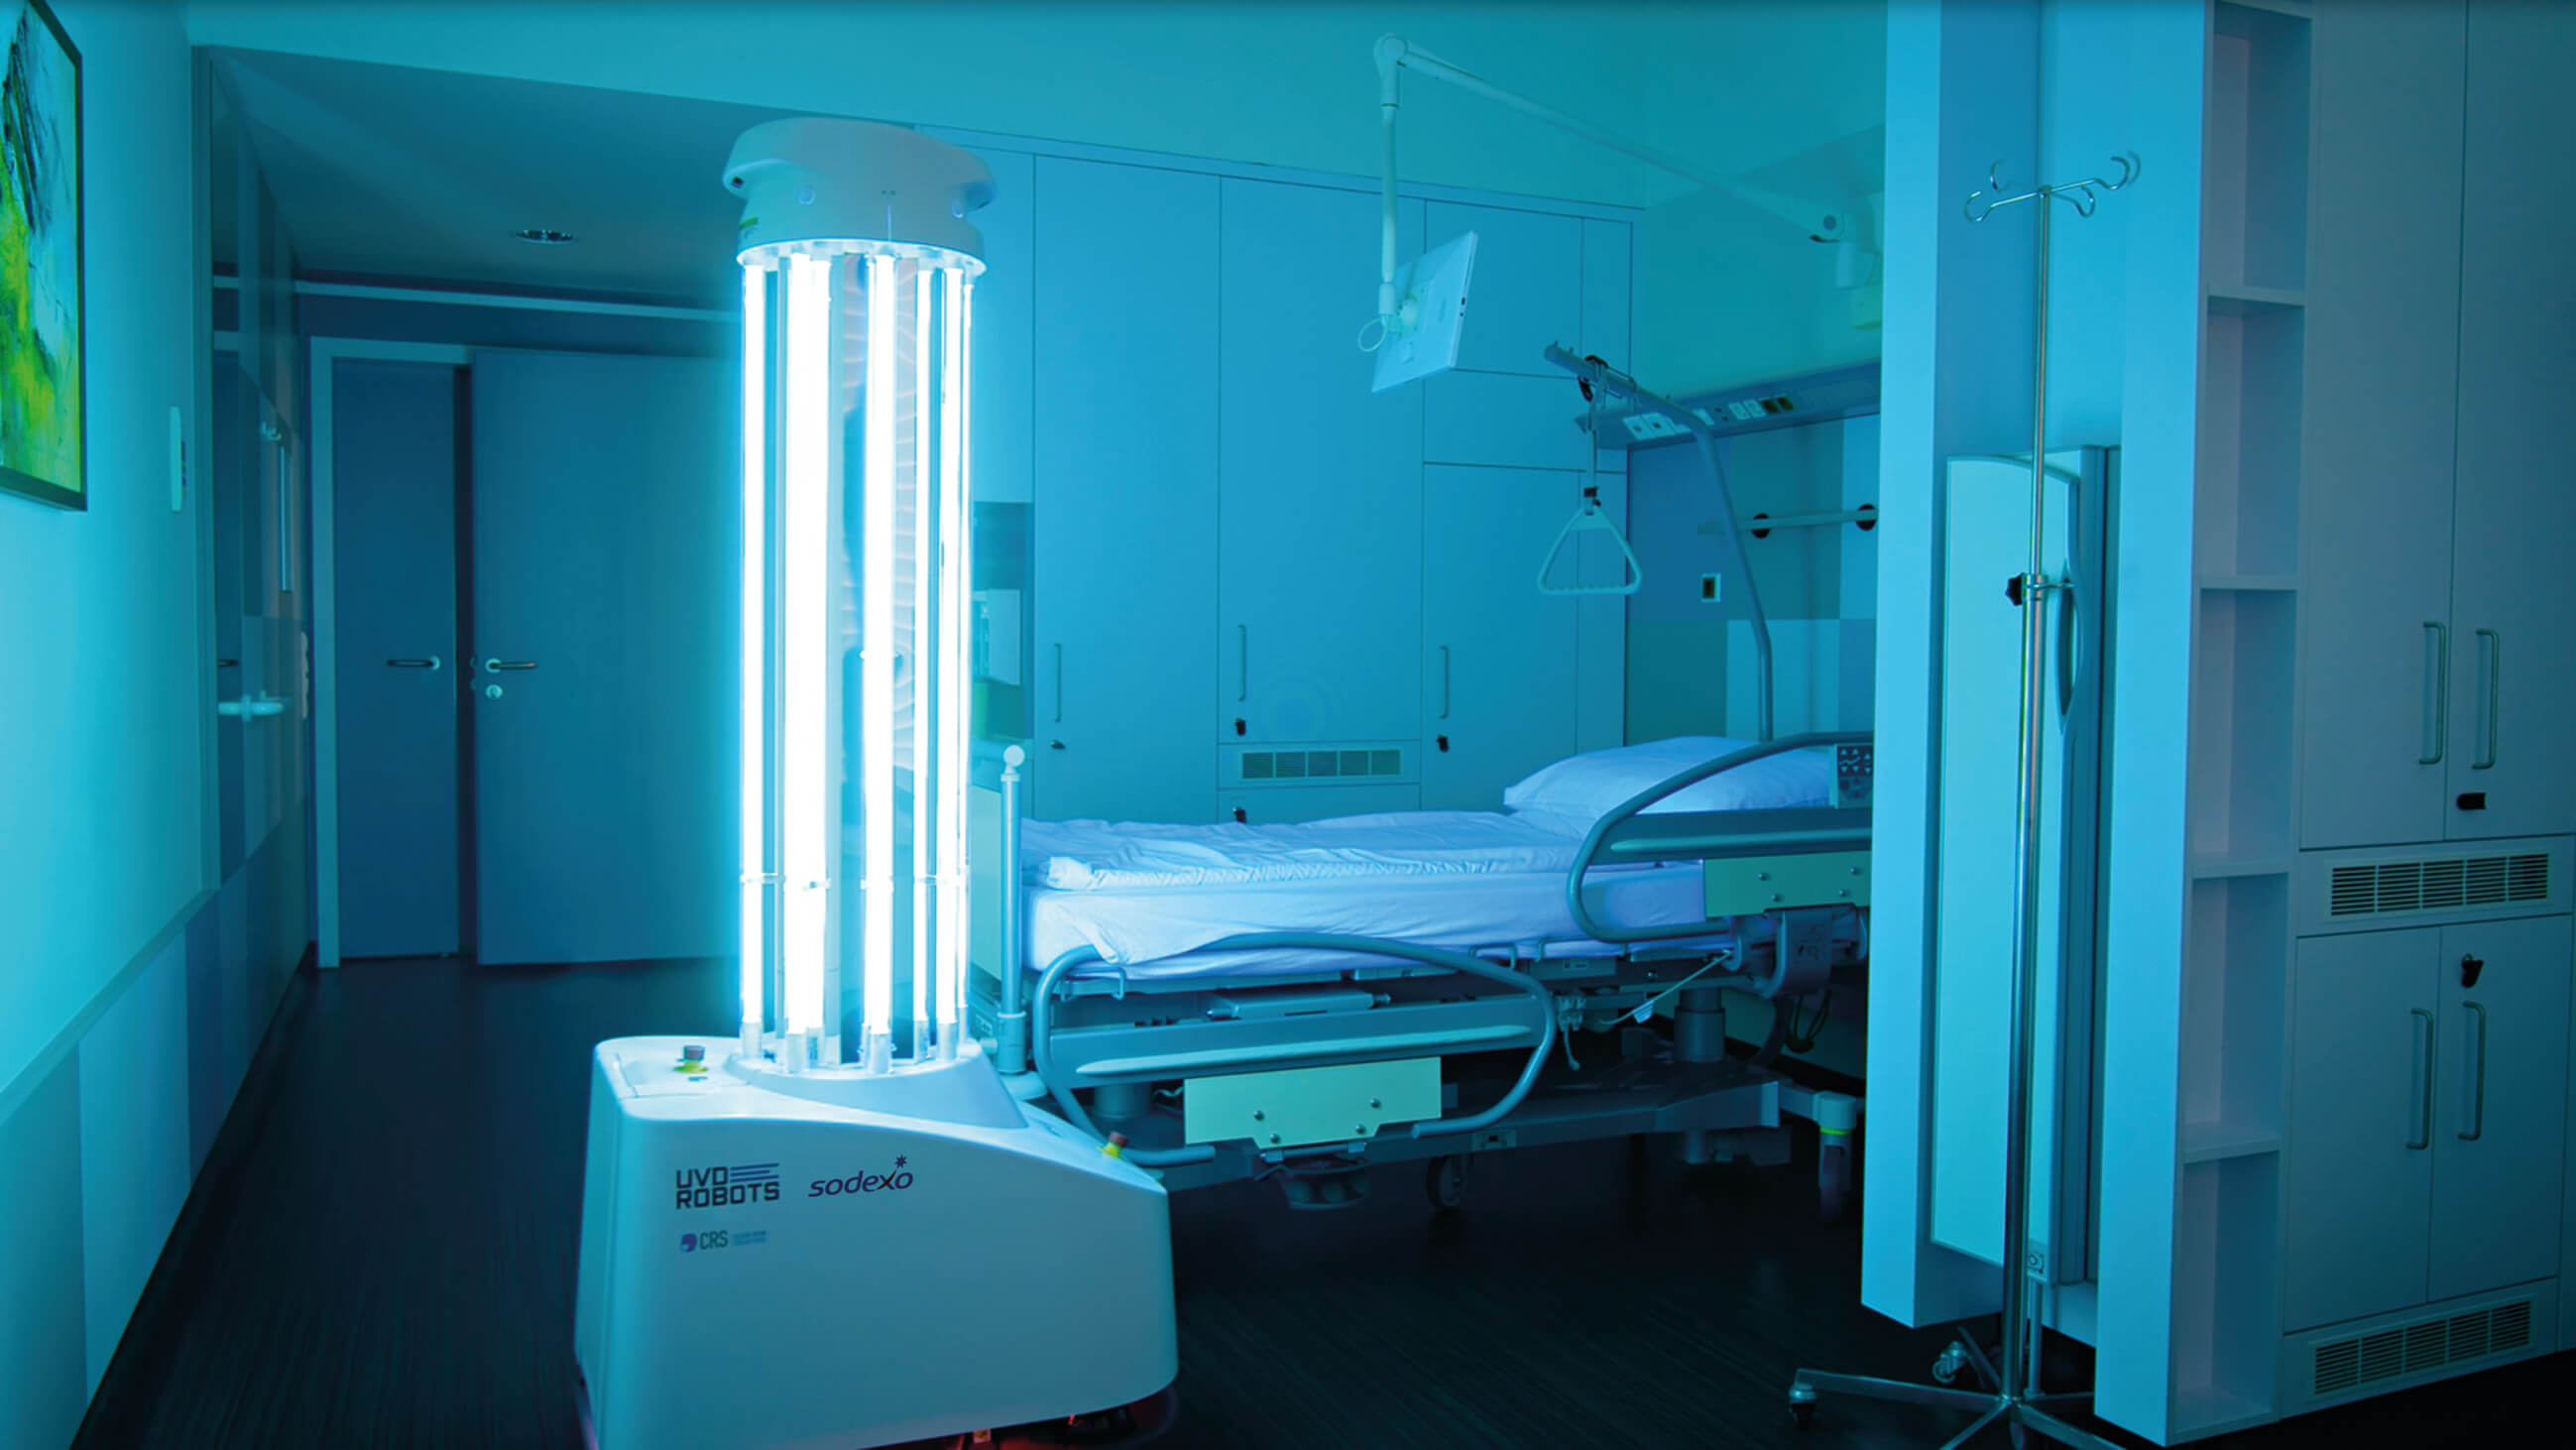 Ein UV-C-Roboter in einem Krankenhauszimmer. Der ungefähr menschengroße Roboter besteht aus säulenförmig angeordneten, leuchtenden Röhren, die auf einem etwas breiteren mobilen Sockel mit der Aufschrift "UVD Robots – Sodexo" stehen. Der Raum ist in türkis-blaues Licht getaucht.